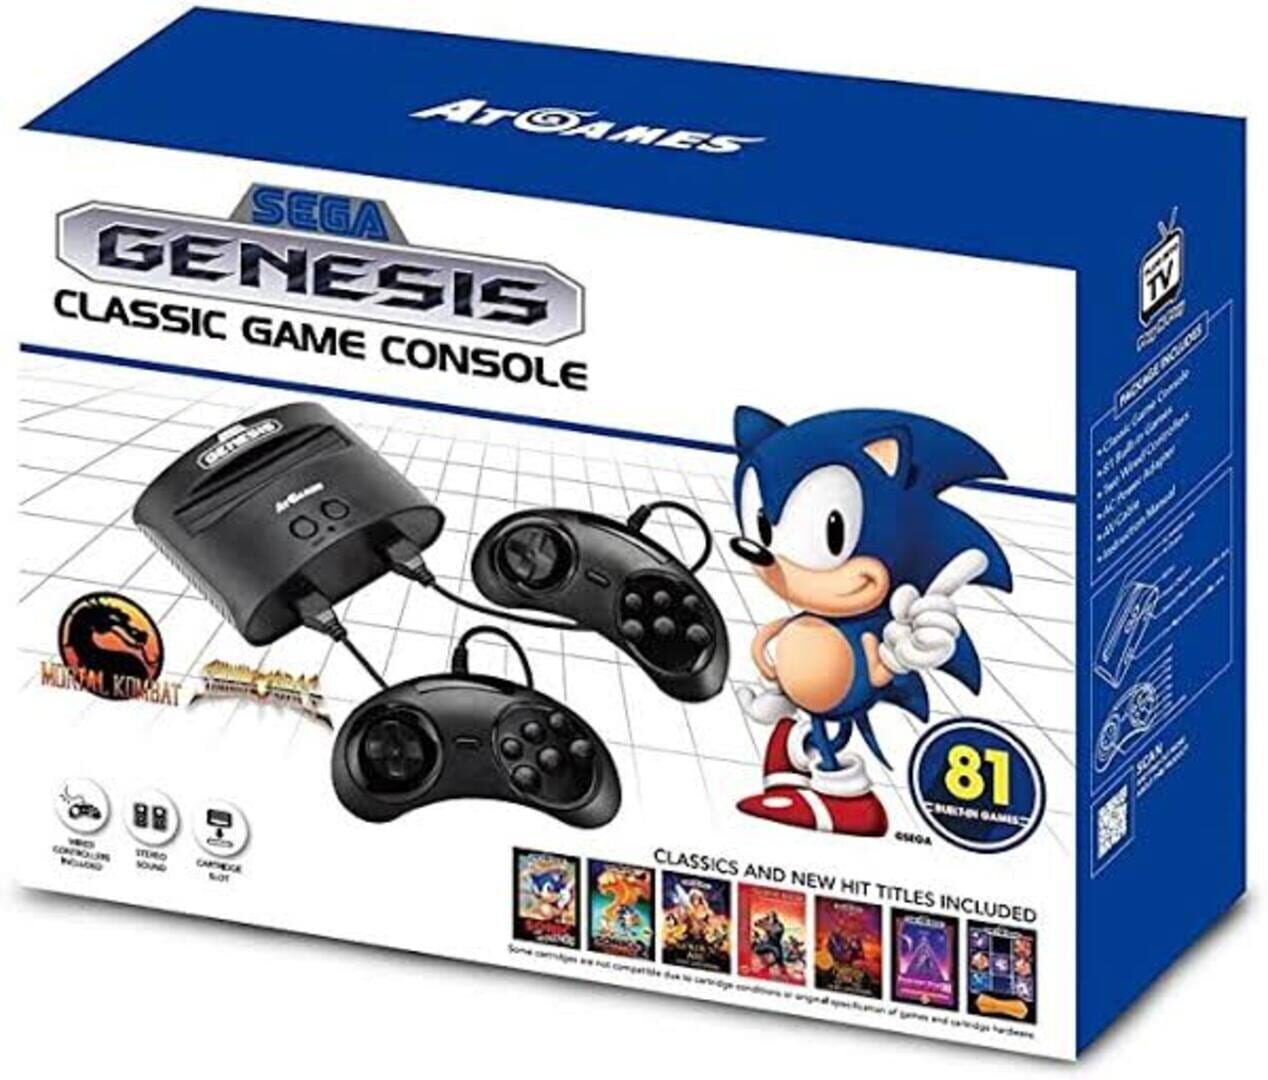 Sega Genesis Classic Game Console featured image